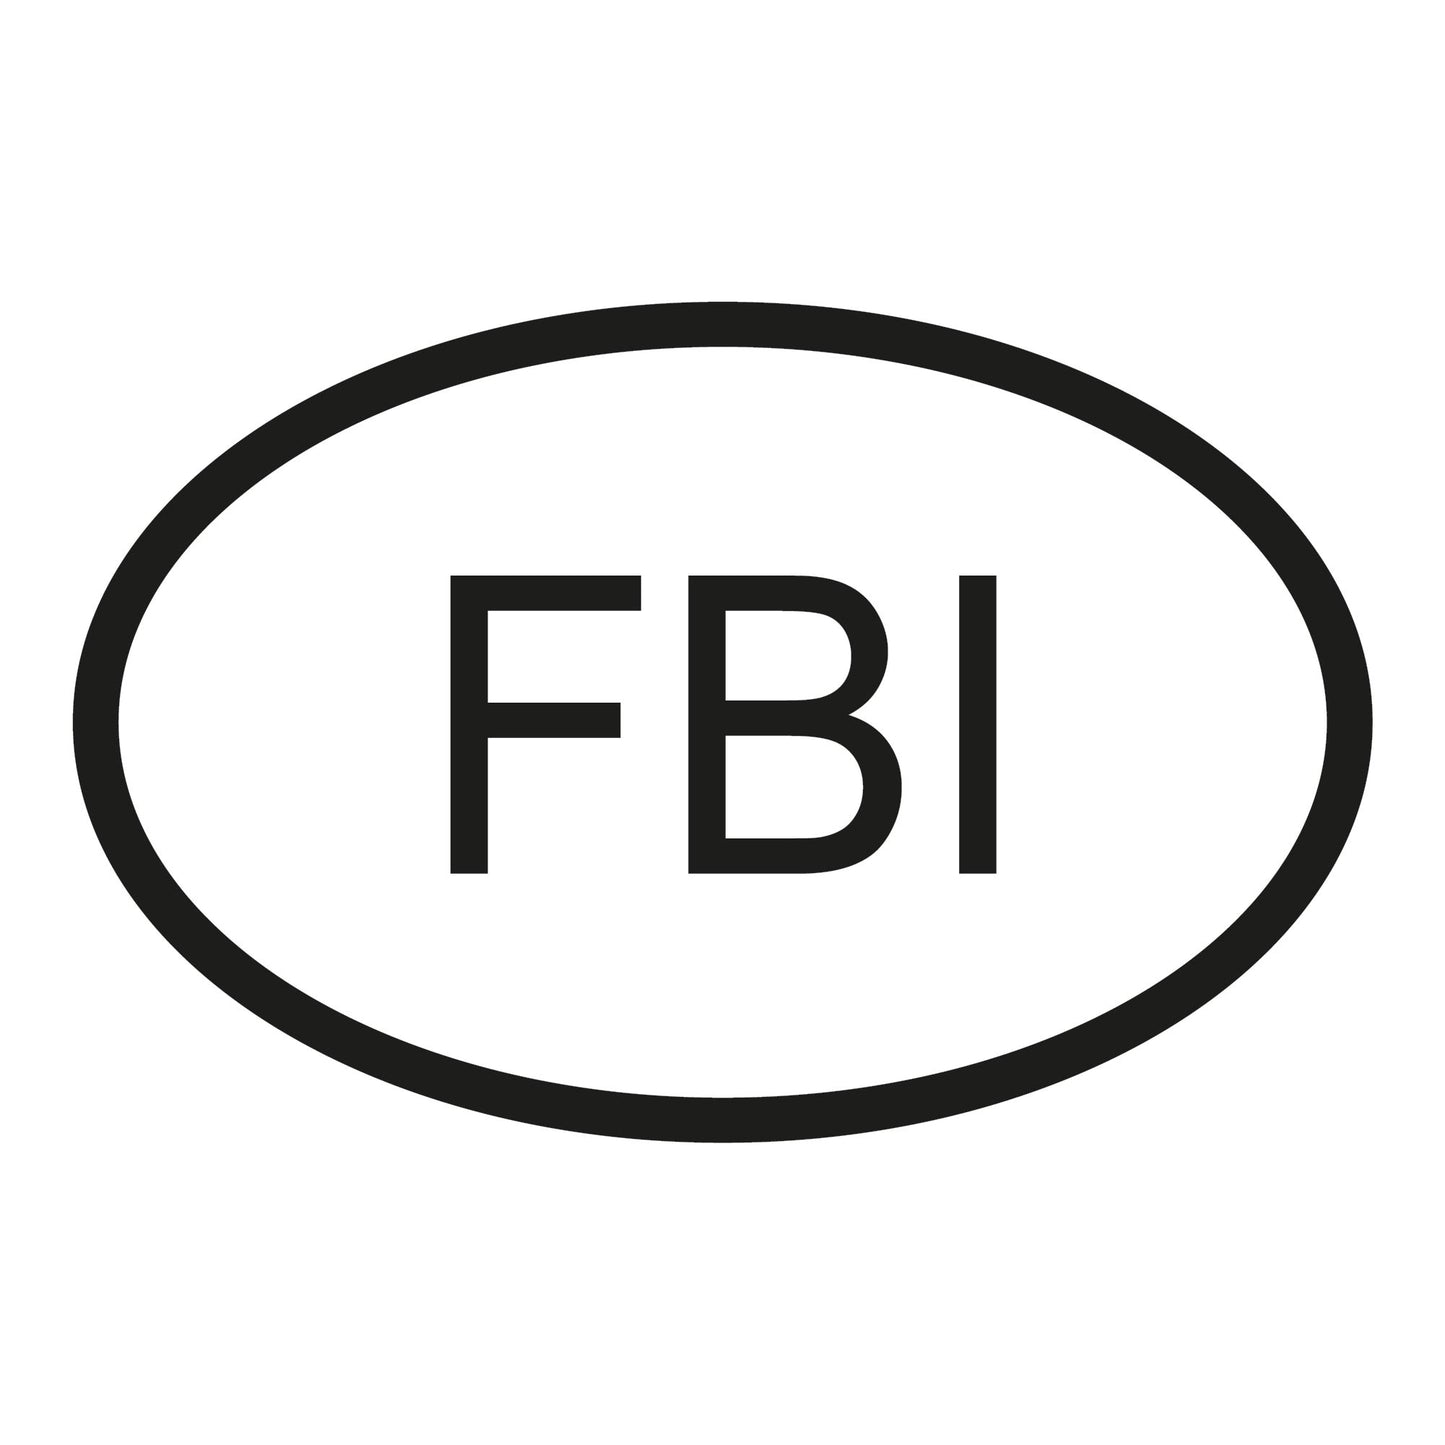 Autoaufkleber - FBI - 110x70 mm